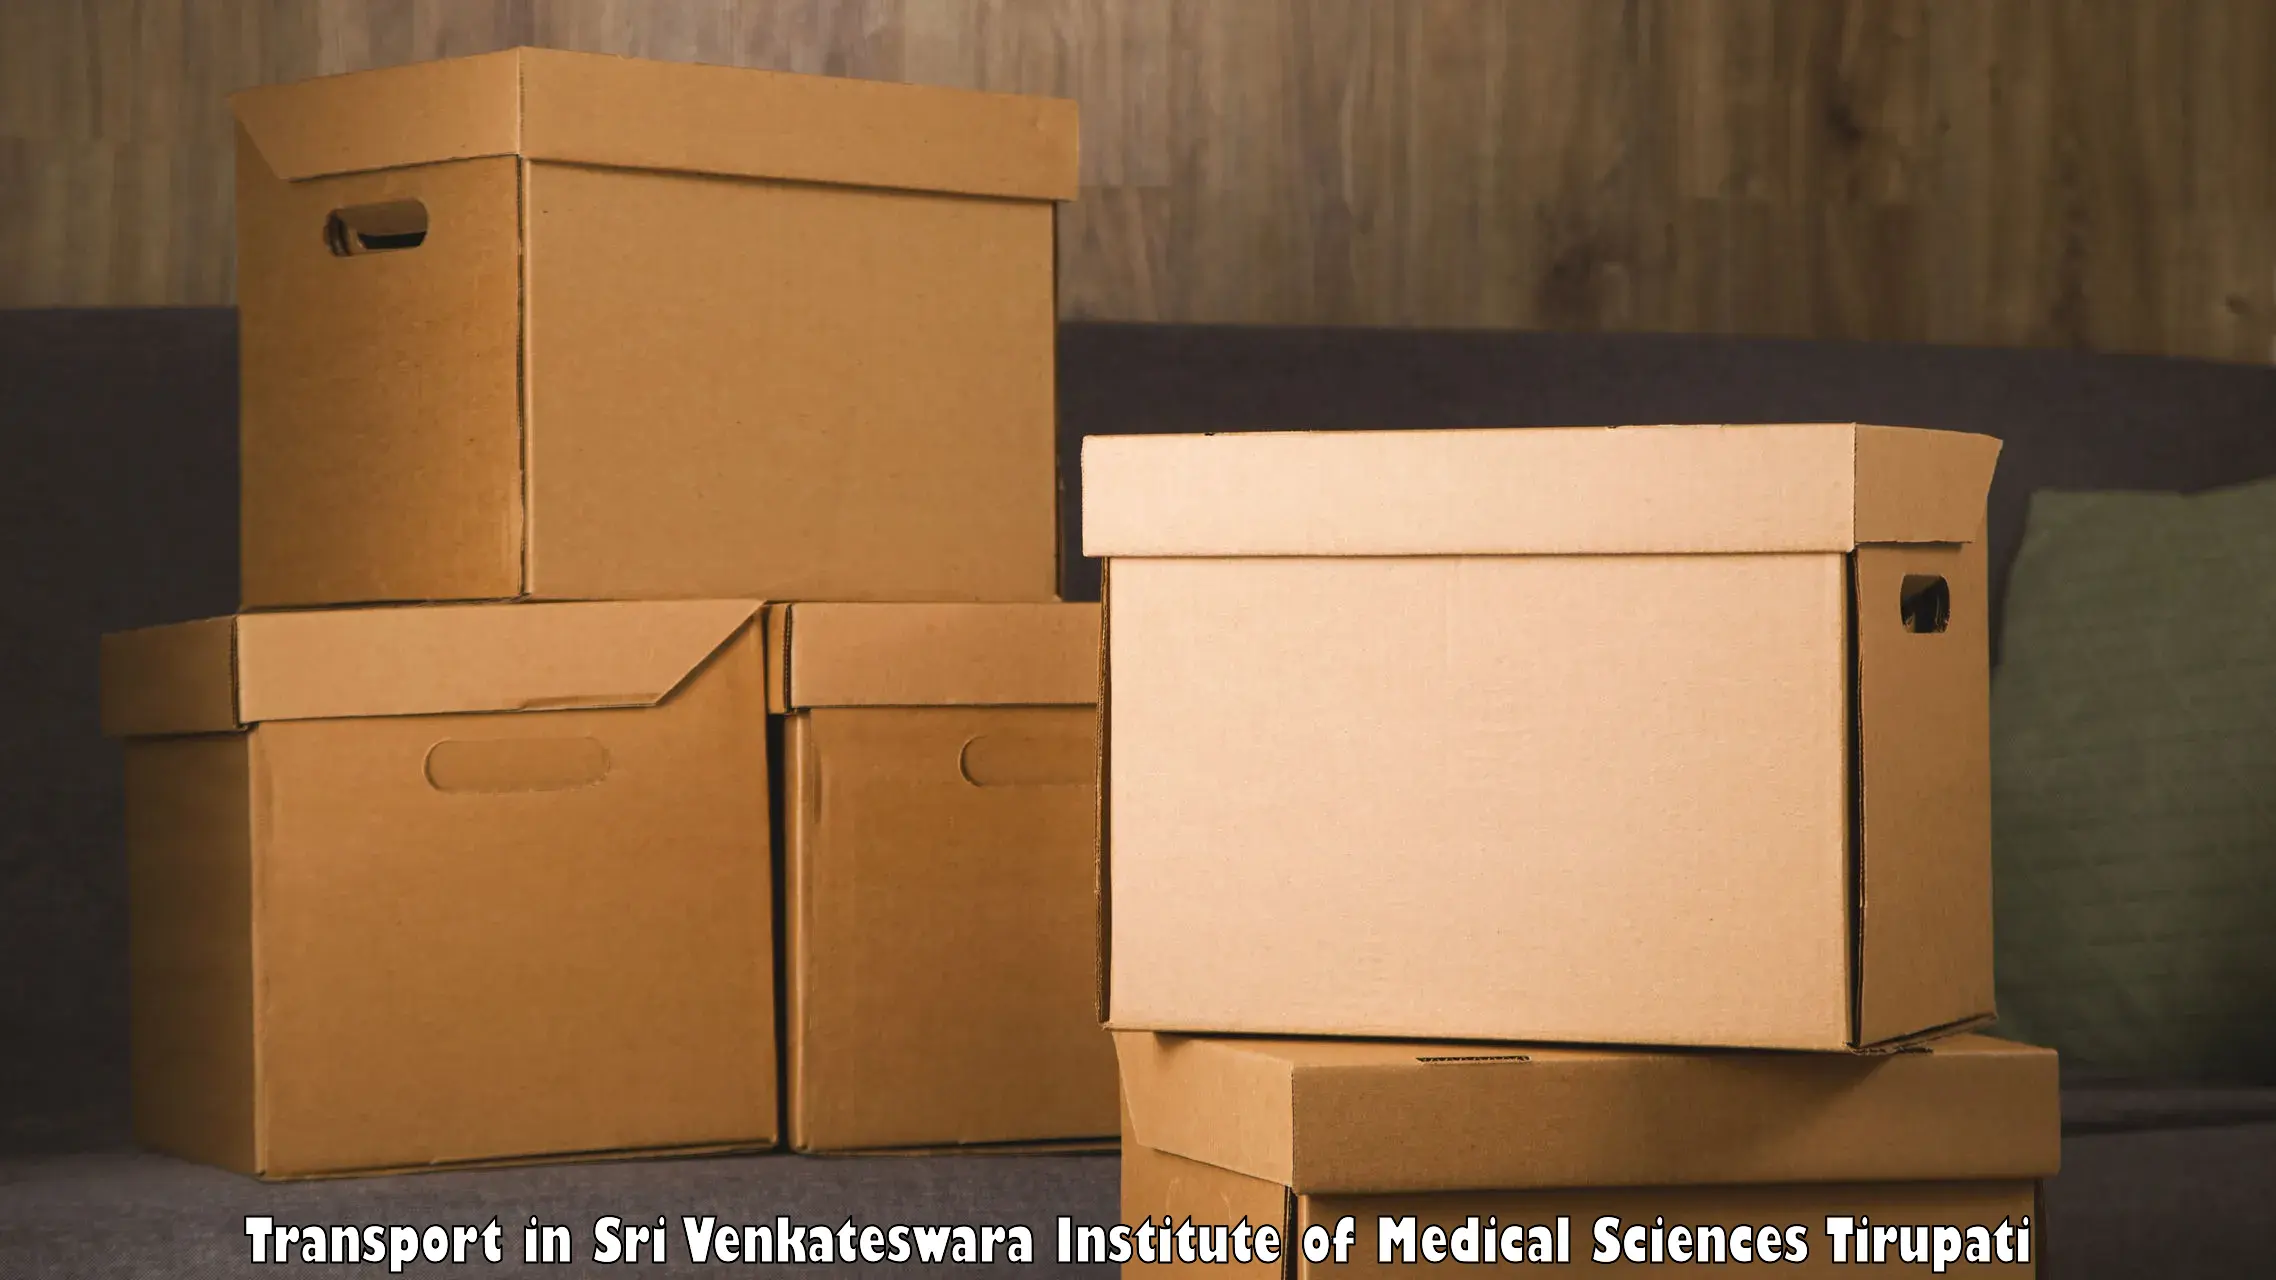 Domestic goods transportation services in Sri Venkateswara Institute of Medical Sciences Tirupati